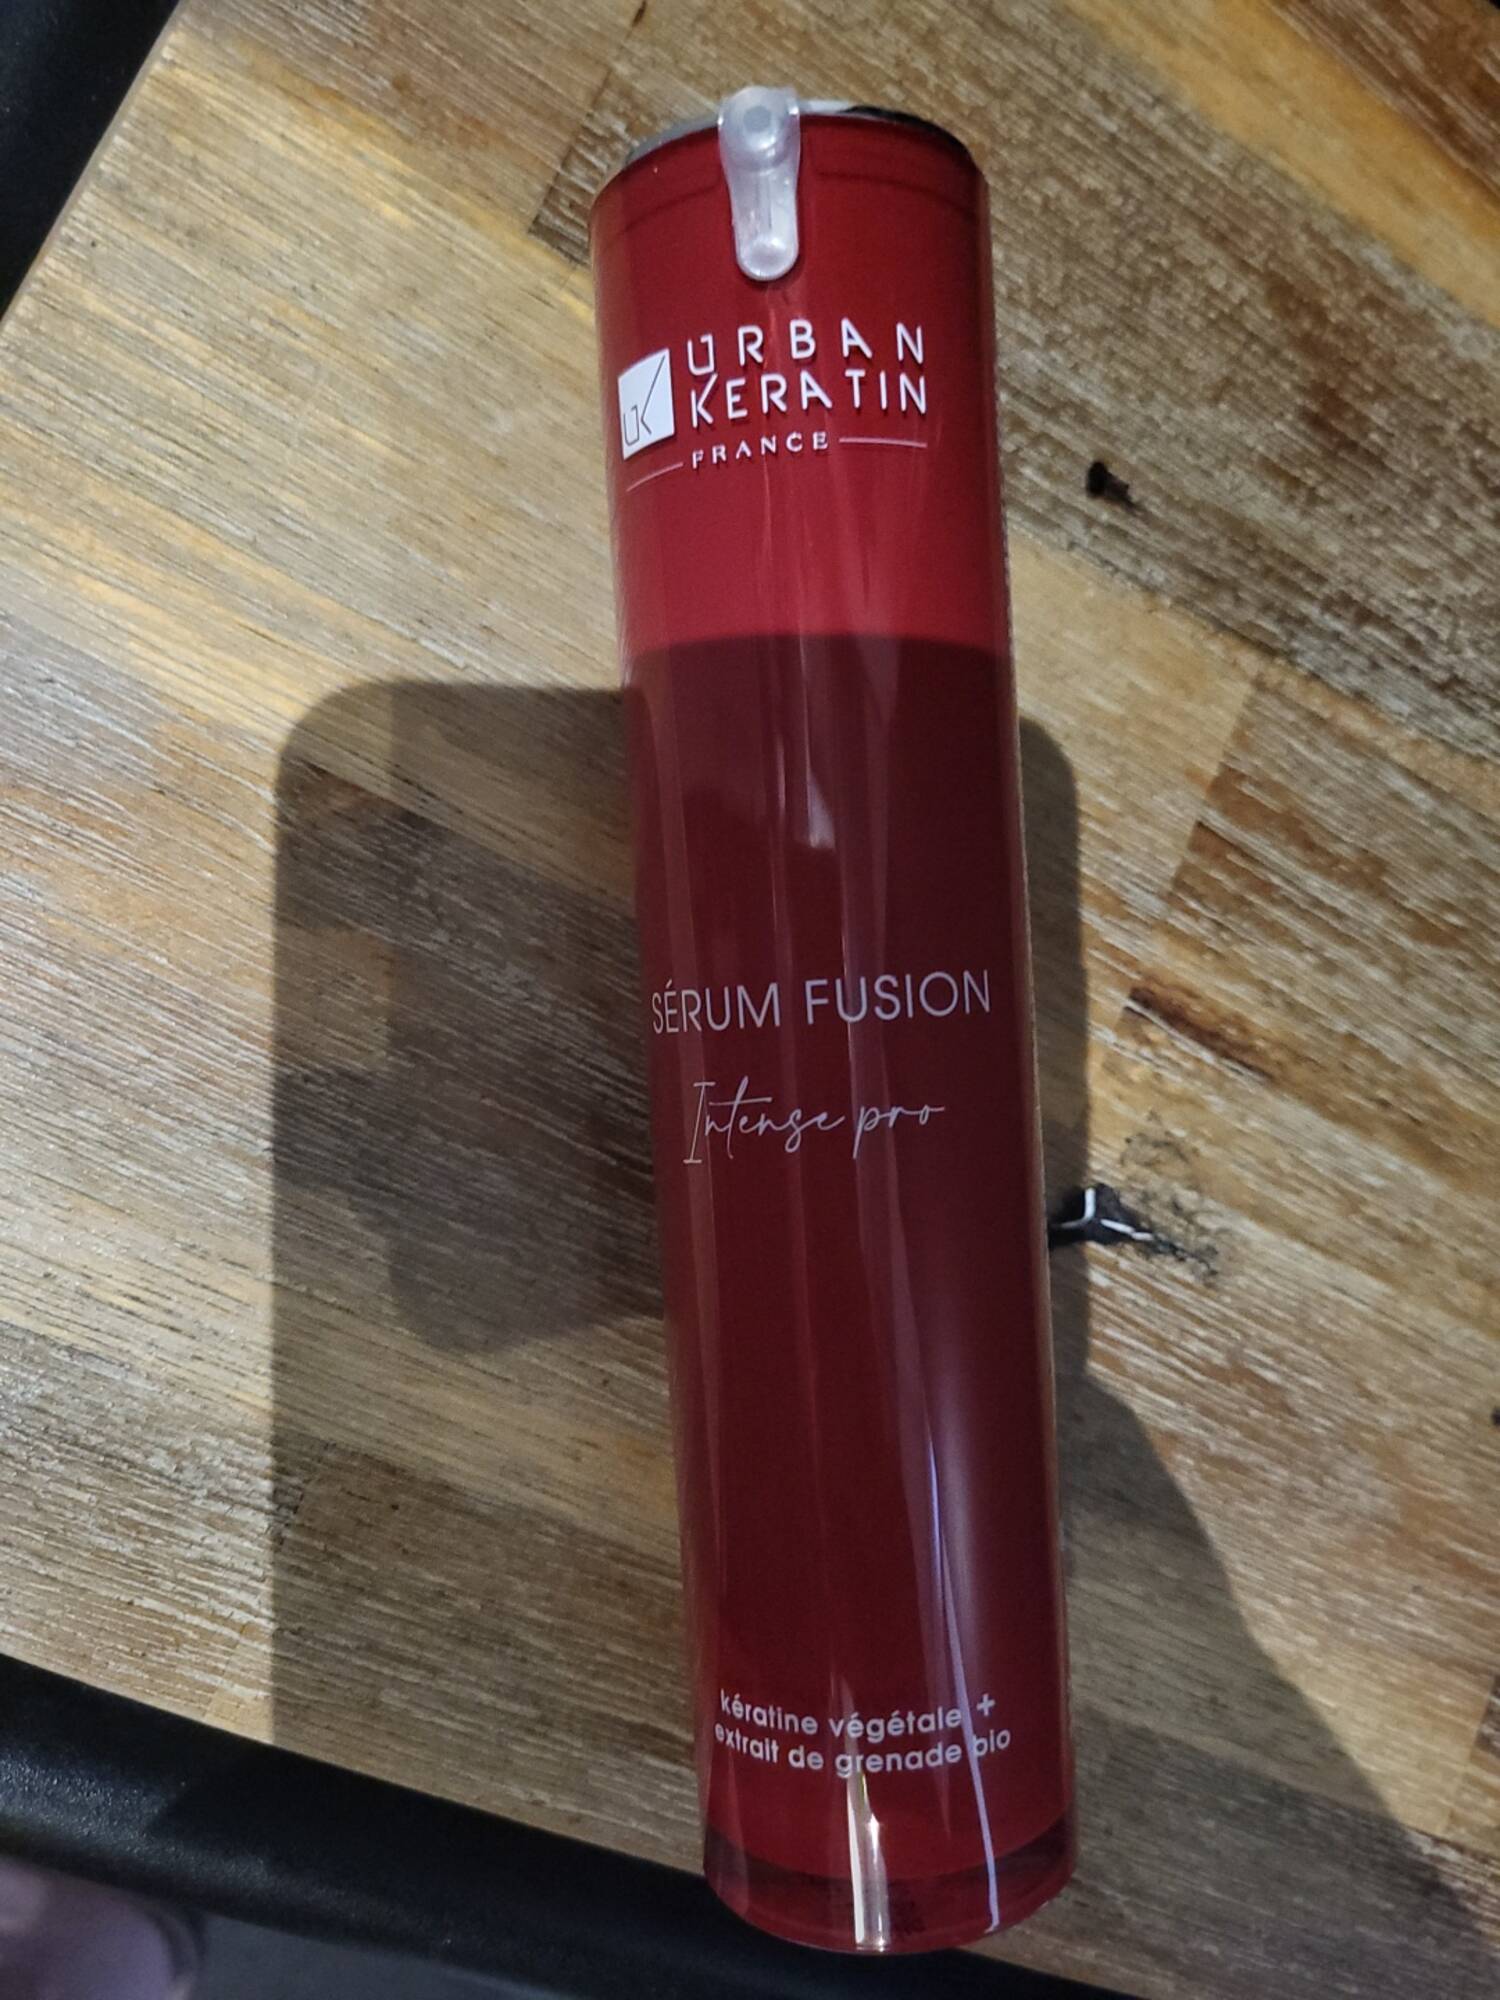 URBAN KERATIN - Intense pro - Serum fusion